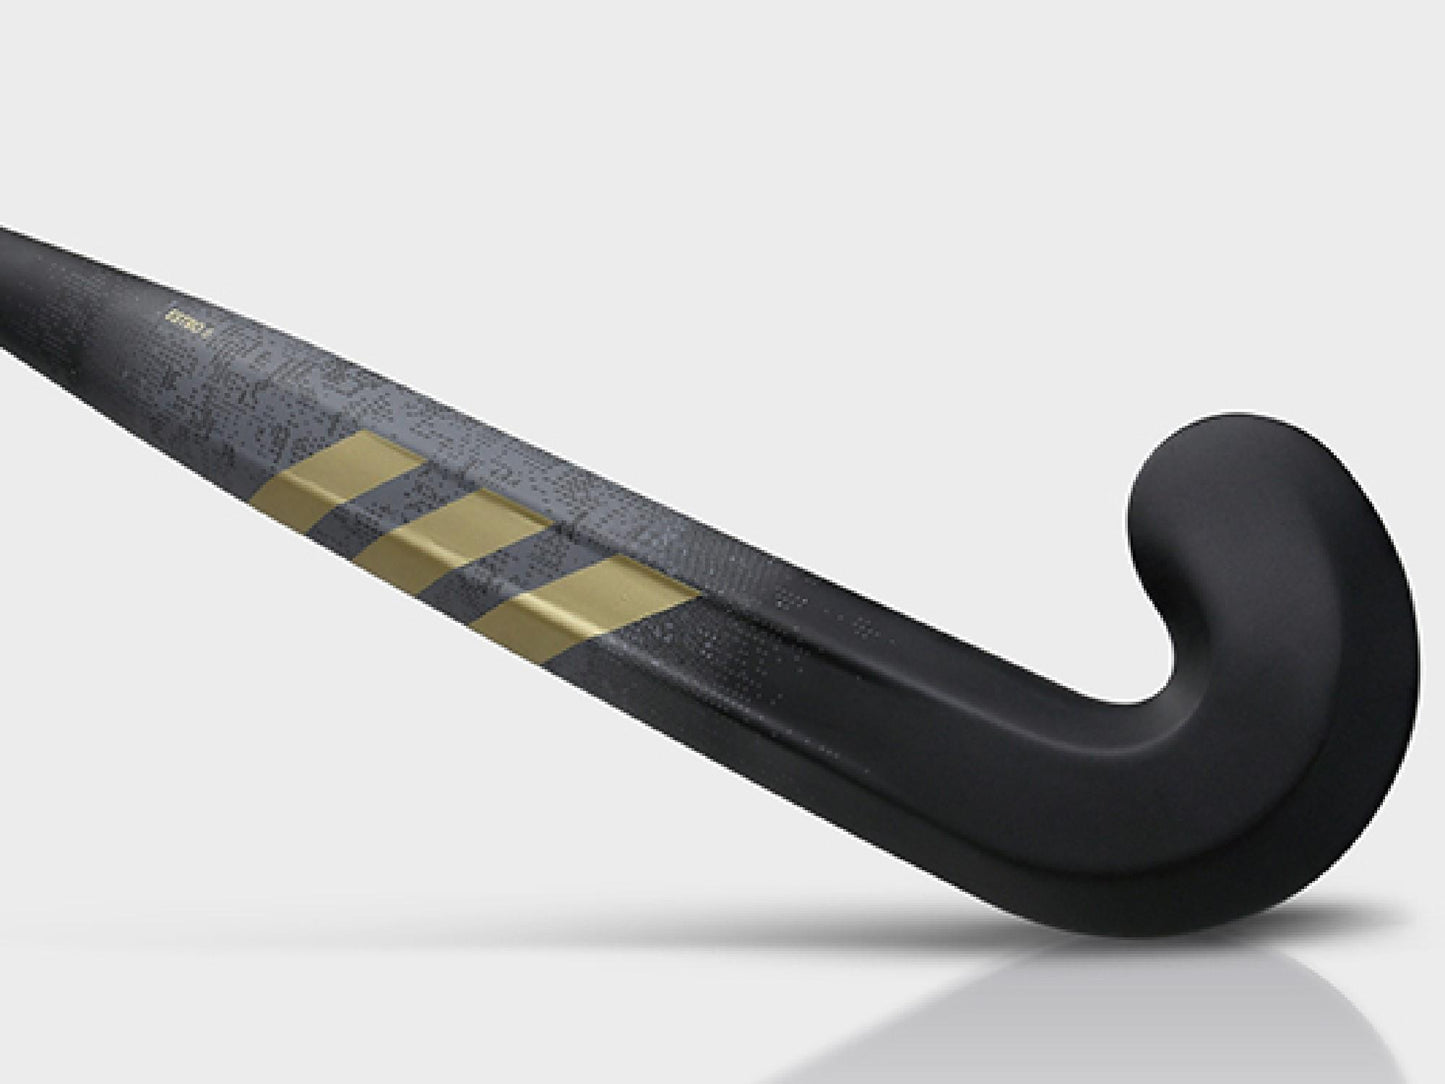 Adidas Estro .8 Composite Hockey Stick (2023-2024)